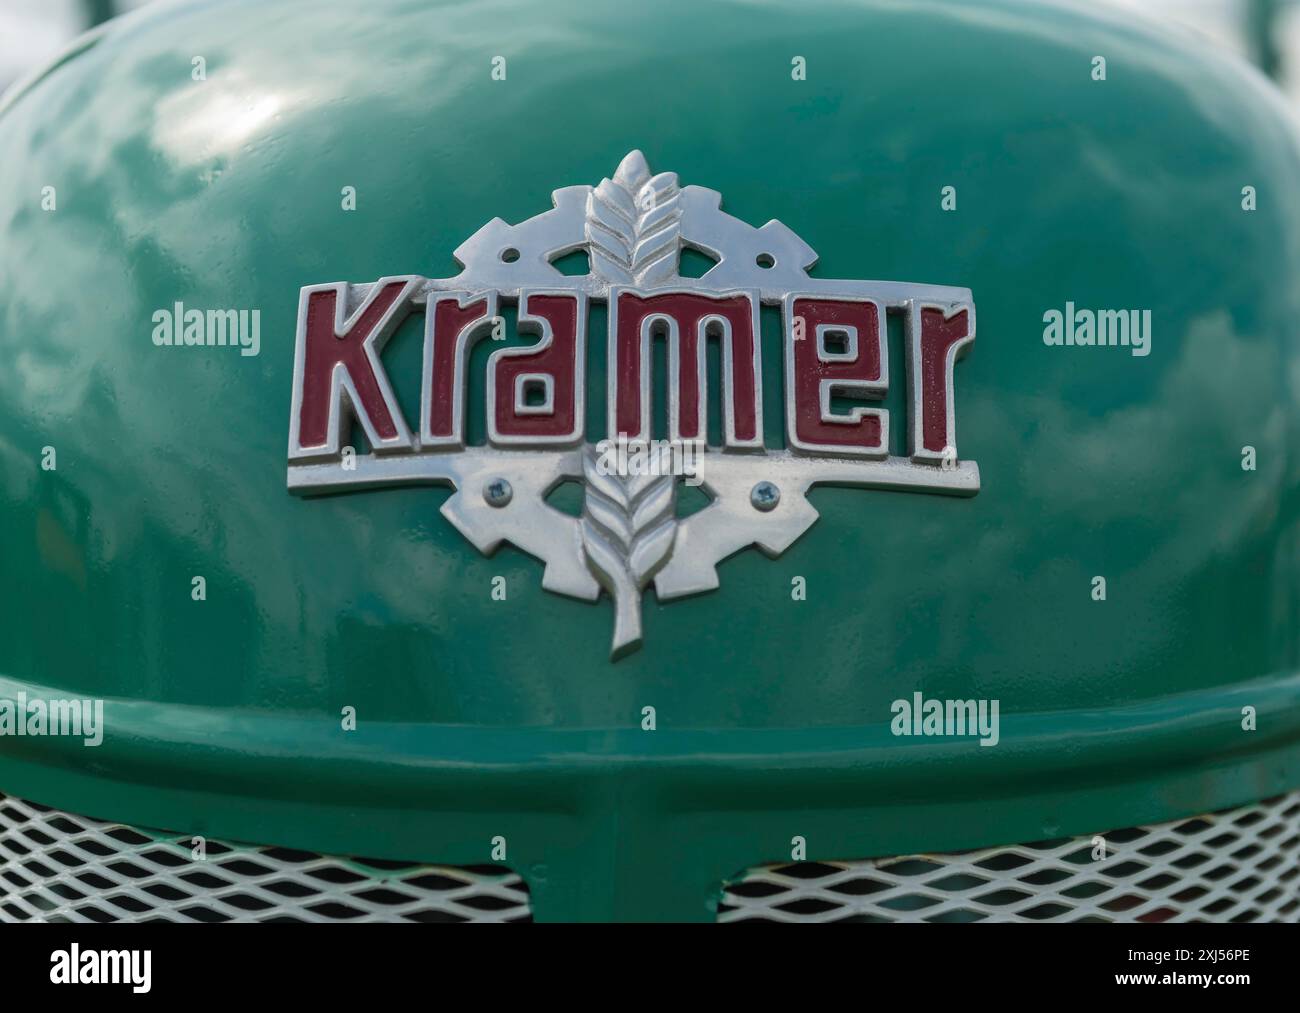 Tracteur Kramer, logo de l'entreprise, problème de tôle sur capot peint en vert, Offenbach, Dreieich, Hesse, Allemagne Banque D'Images